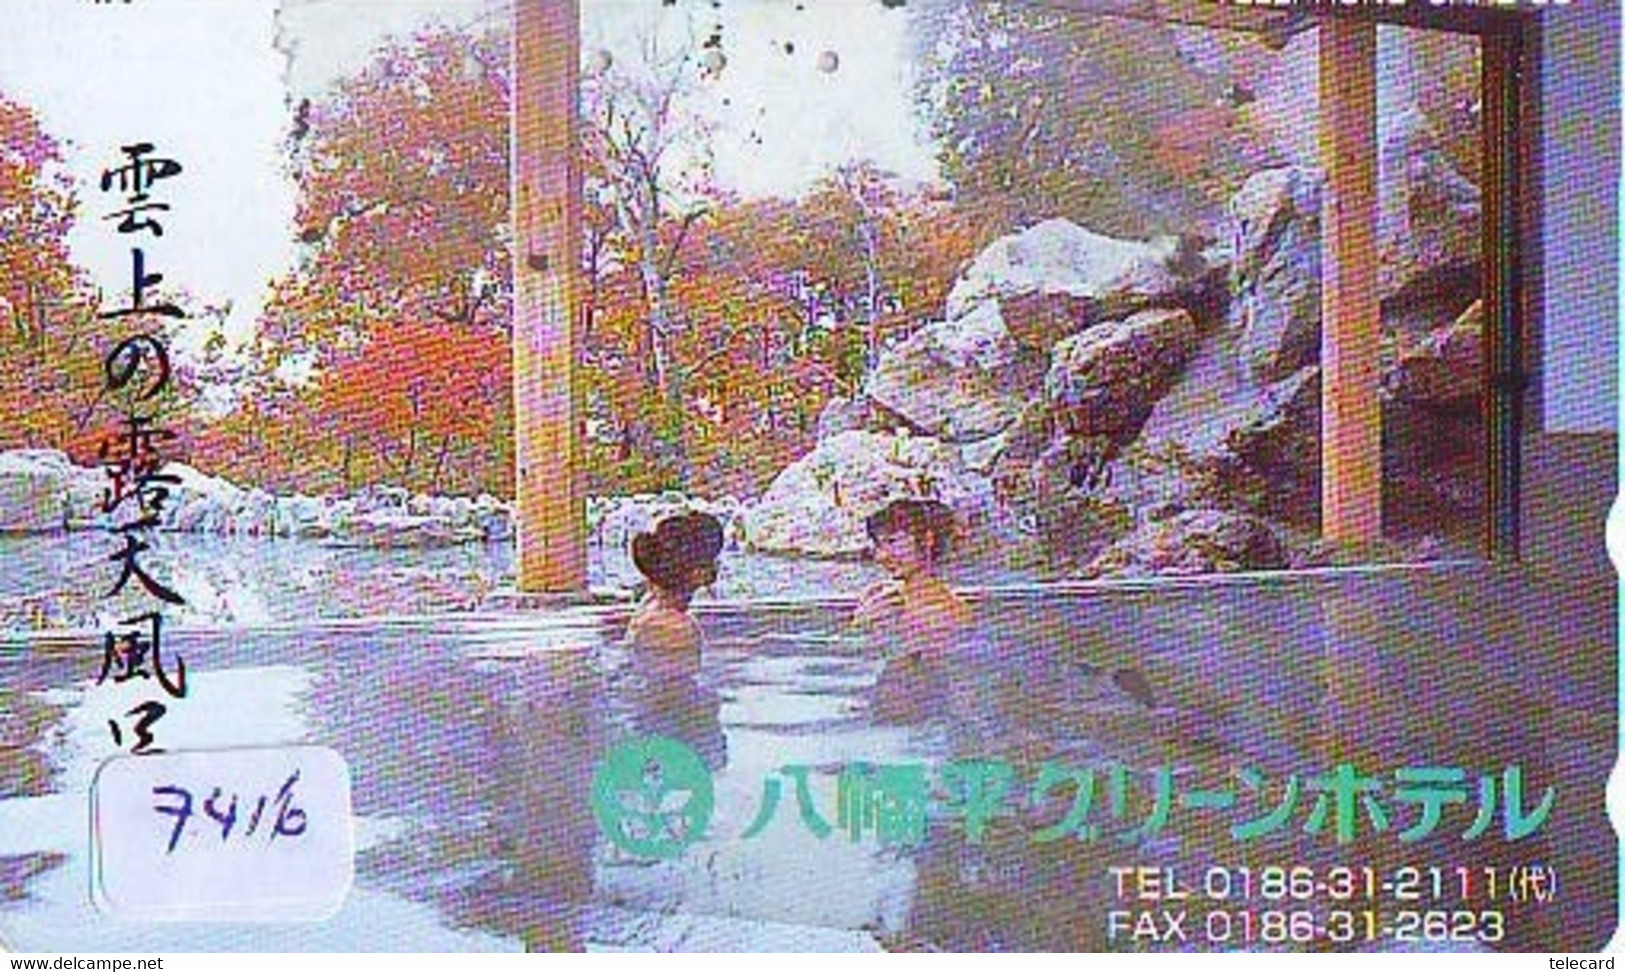 Télécarte Japon * FEMME EROTIQUE (7416) BATH * PHONECARD JAPAN * TELEFONKARTE *  BATHCLOTHES LINGERIE - Mode